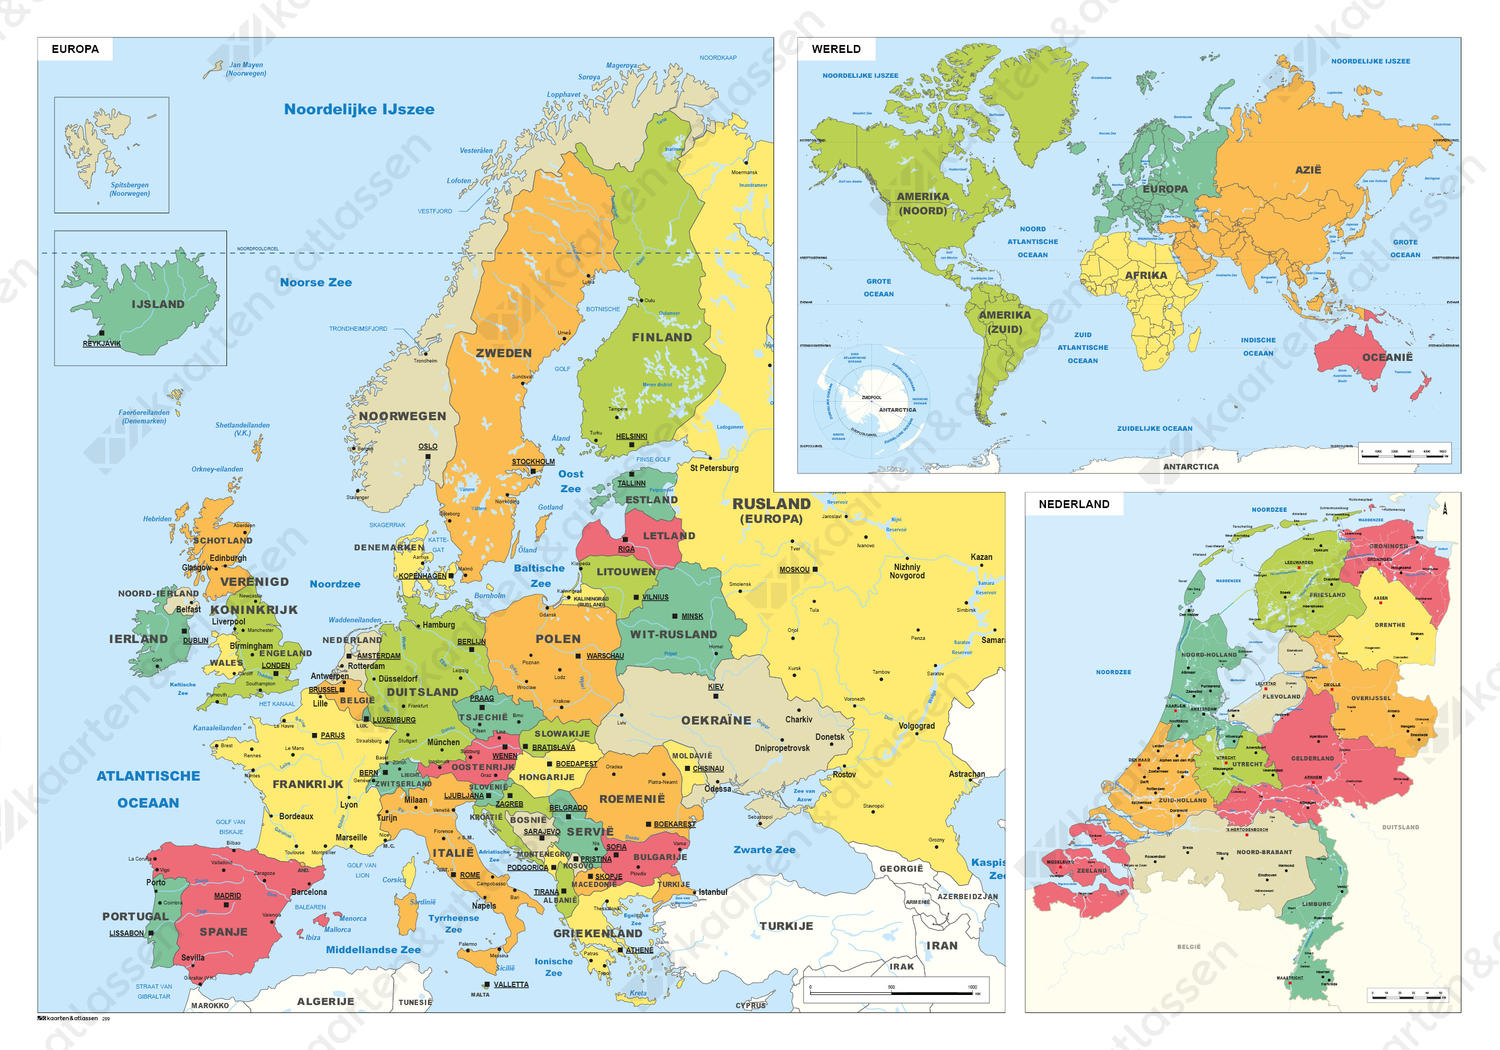 Bejaarden Volgen Het koud krijgen Schoolkaart Europa/Wereld/Nederland 299 | Kaarten en Atlassen.nl